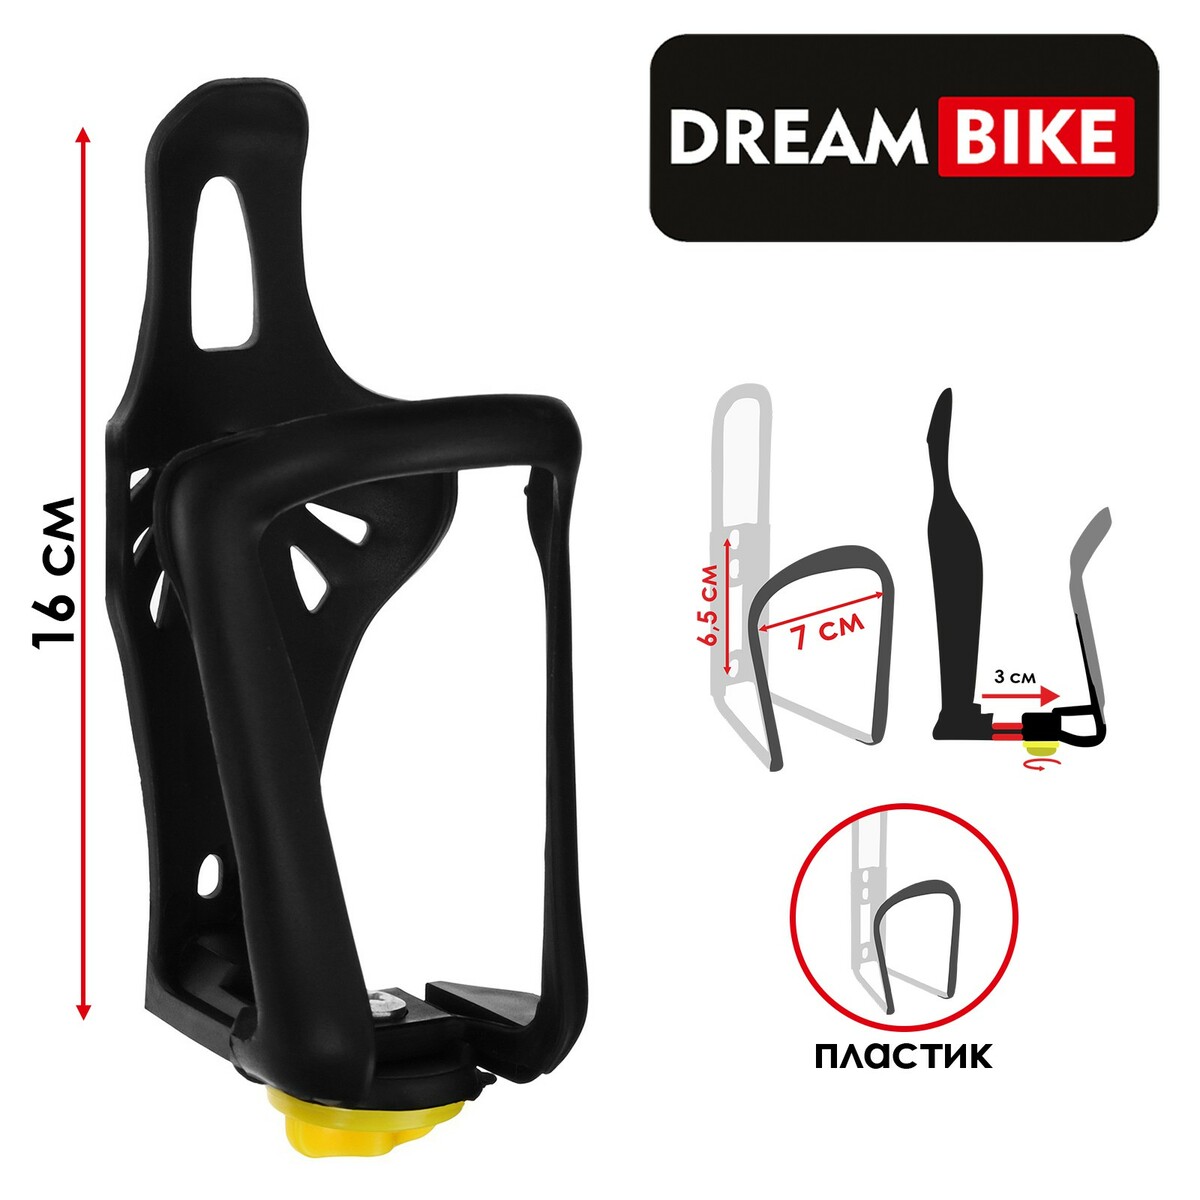  dream bike, ,  ,   